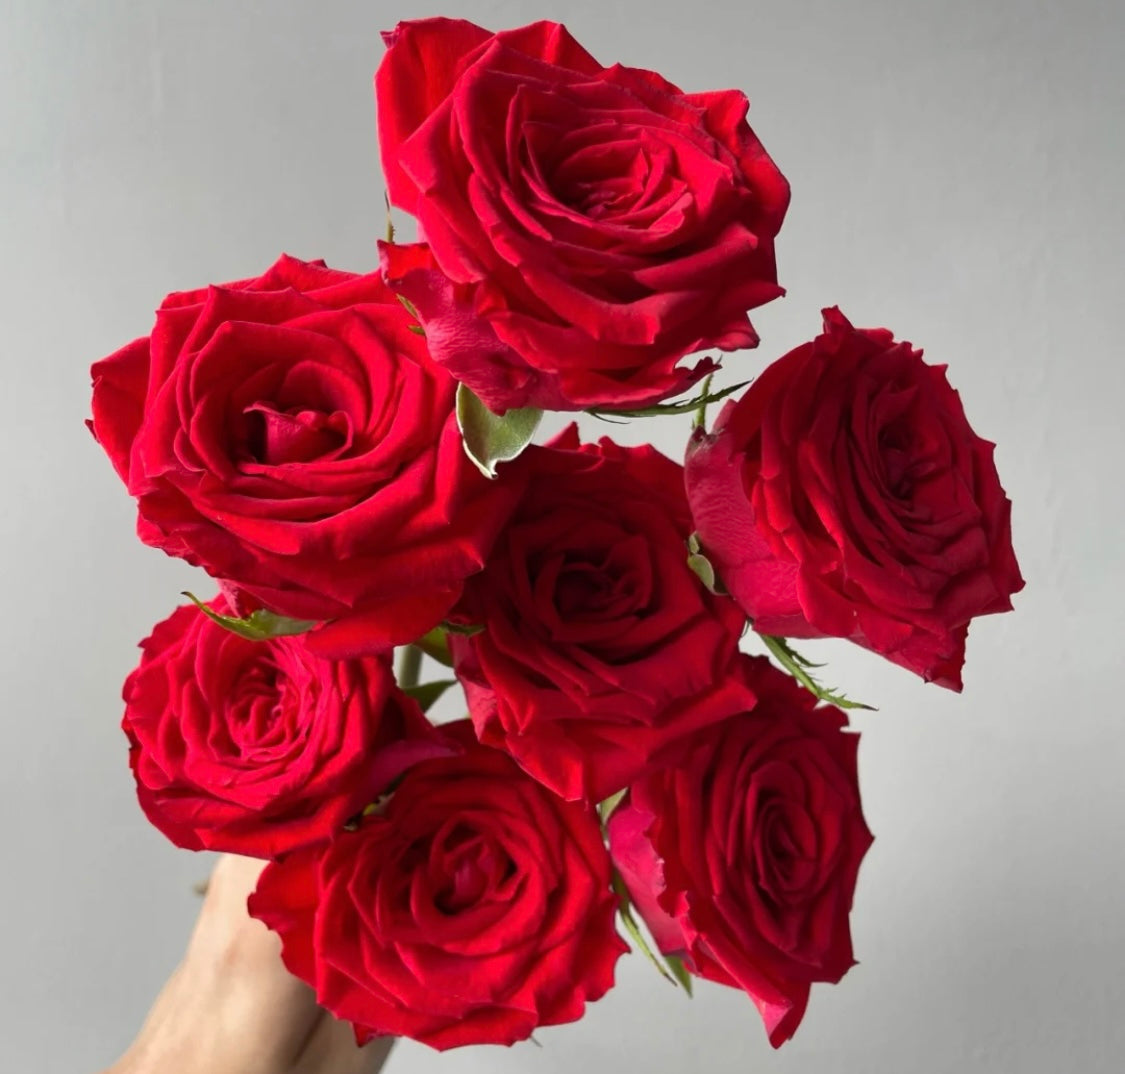 玫瑰是一種充滿浪漫和熱情的花卉，常被用於表達愛情和情感。它們有著各種顏色的花瓣，包括紅色、粉紅色、白色、黃色等，每種顏色都有著不同的象徵意義。紅玫瑰象徵熱情和愛情，粉紅玫瑰象徵浪漫和感謝，白玫瑰象徵純潔和祝福，黃玫瑰象徵友情和關懷。玫瑰還有著迷人的香氣，可以為房間帶來浪漫和溫馨的感覺。玫瑰是一種非常適合用於送給情人和摯愛的花卉禮物。送給摯愛一束玫瑰，表達你的愛情和情感。立即下單，讓玫瑰的美麗和熱情，為你帶來浪漫和幸福。